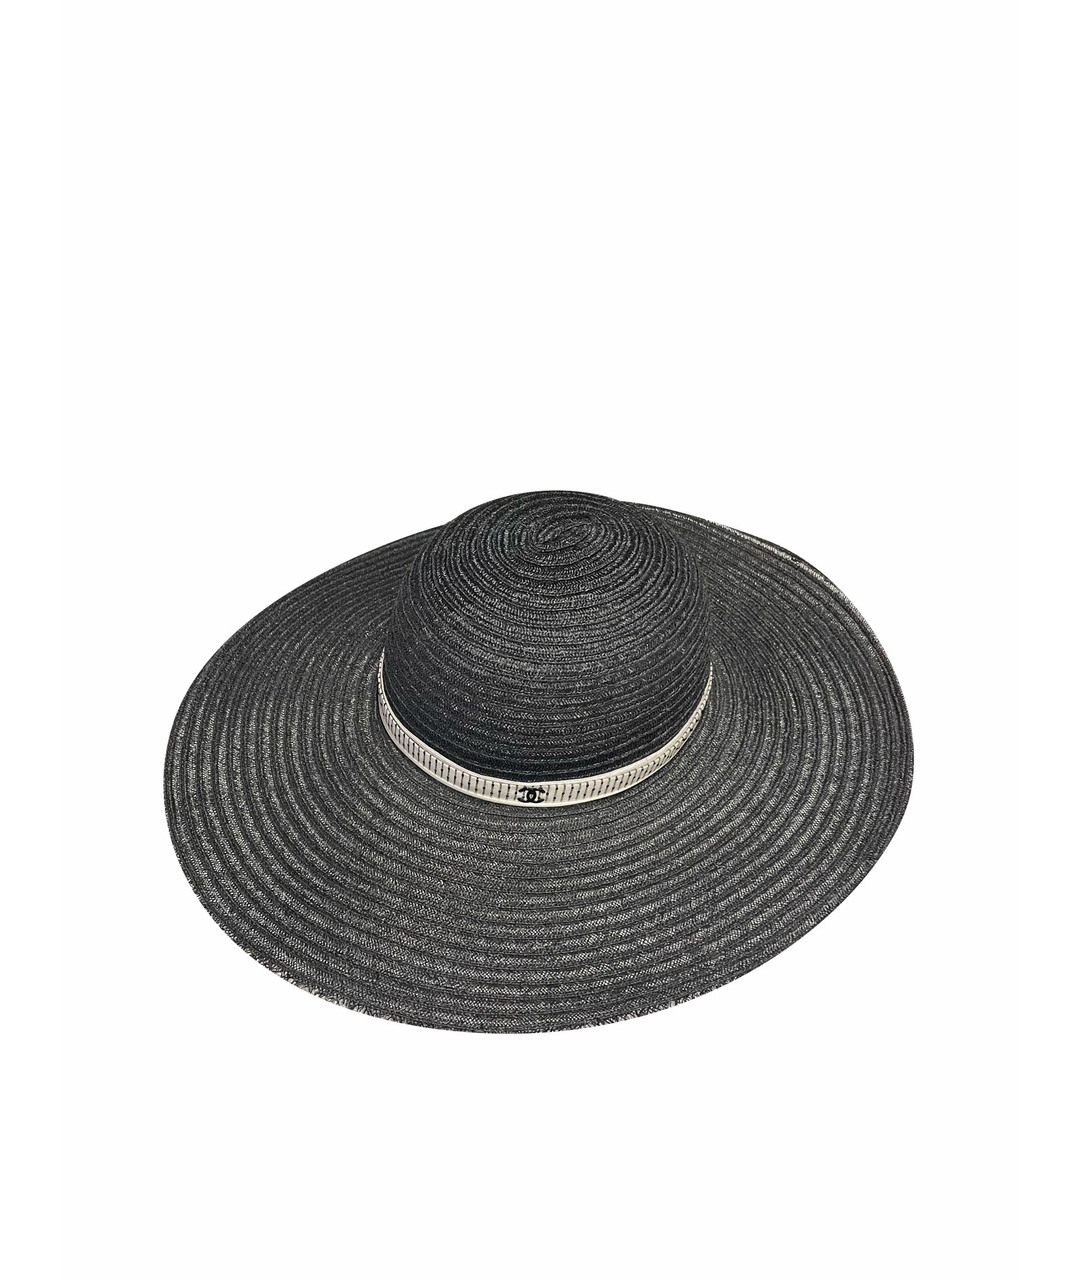 CHANEL PRE-OWNED Черная соломенная шляпа, фото 1